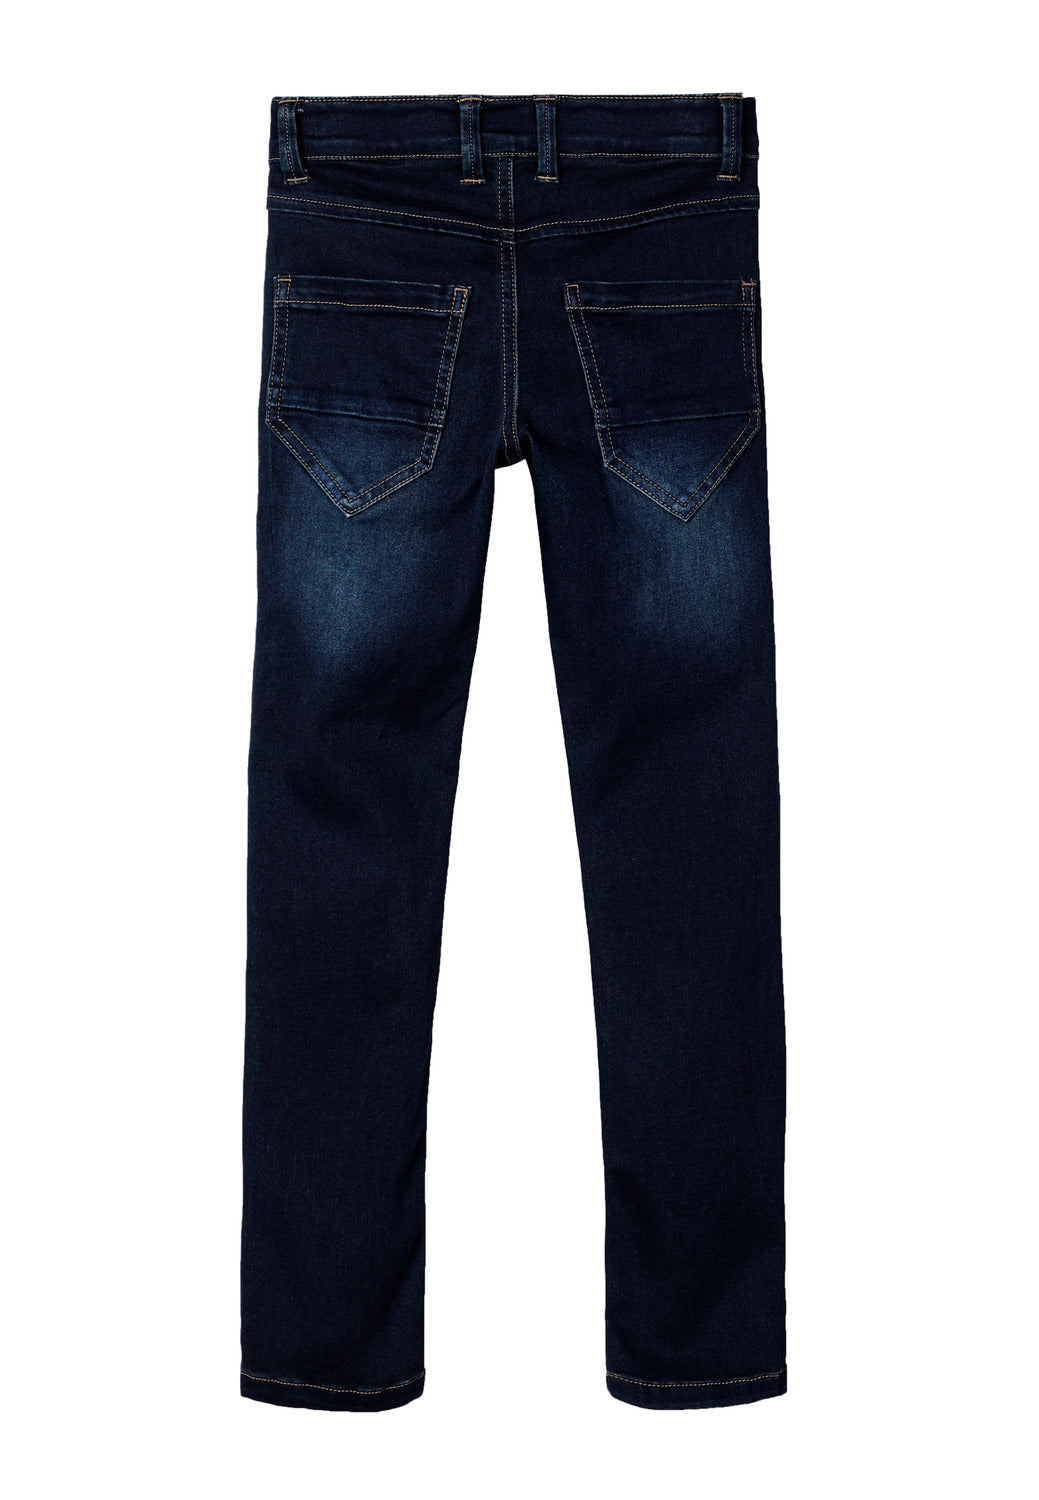 NKMPETE Jeans - Dark Blue Denim